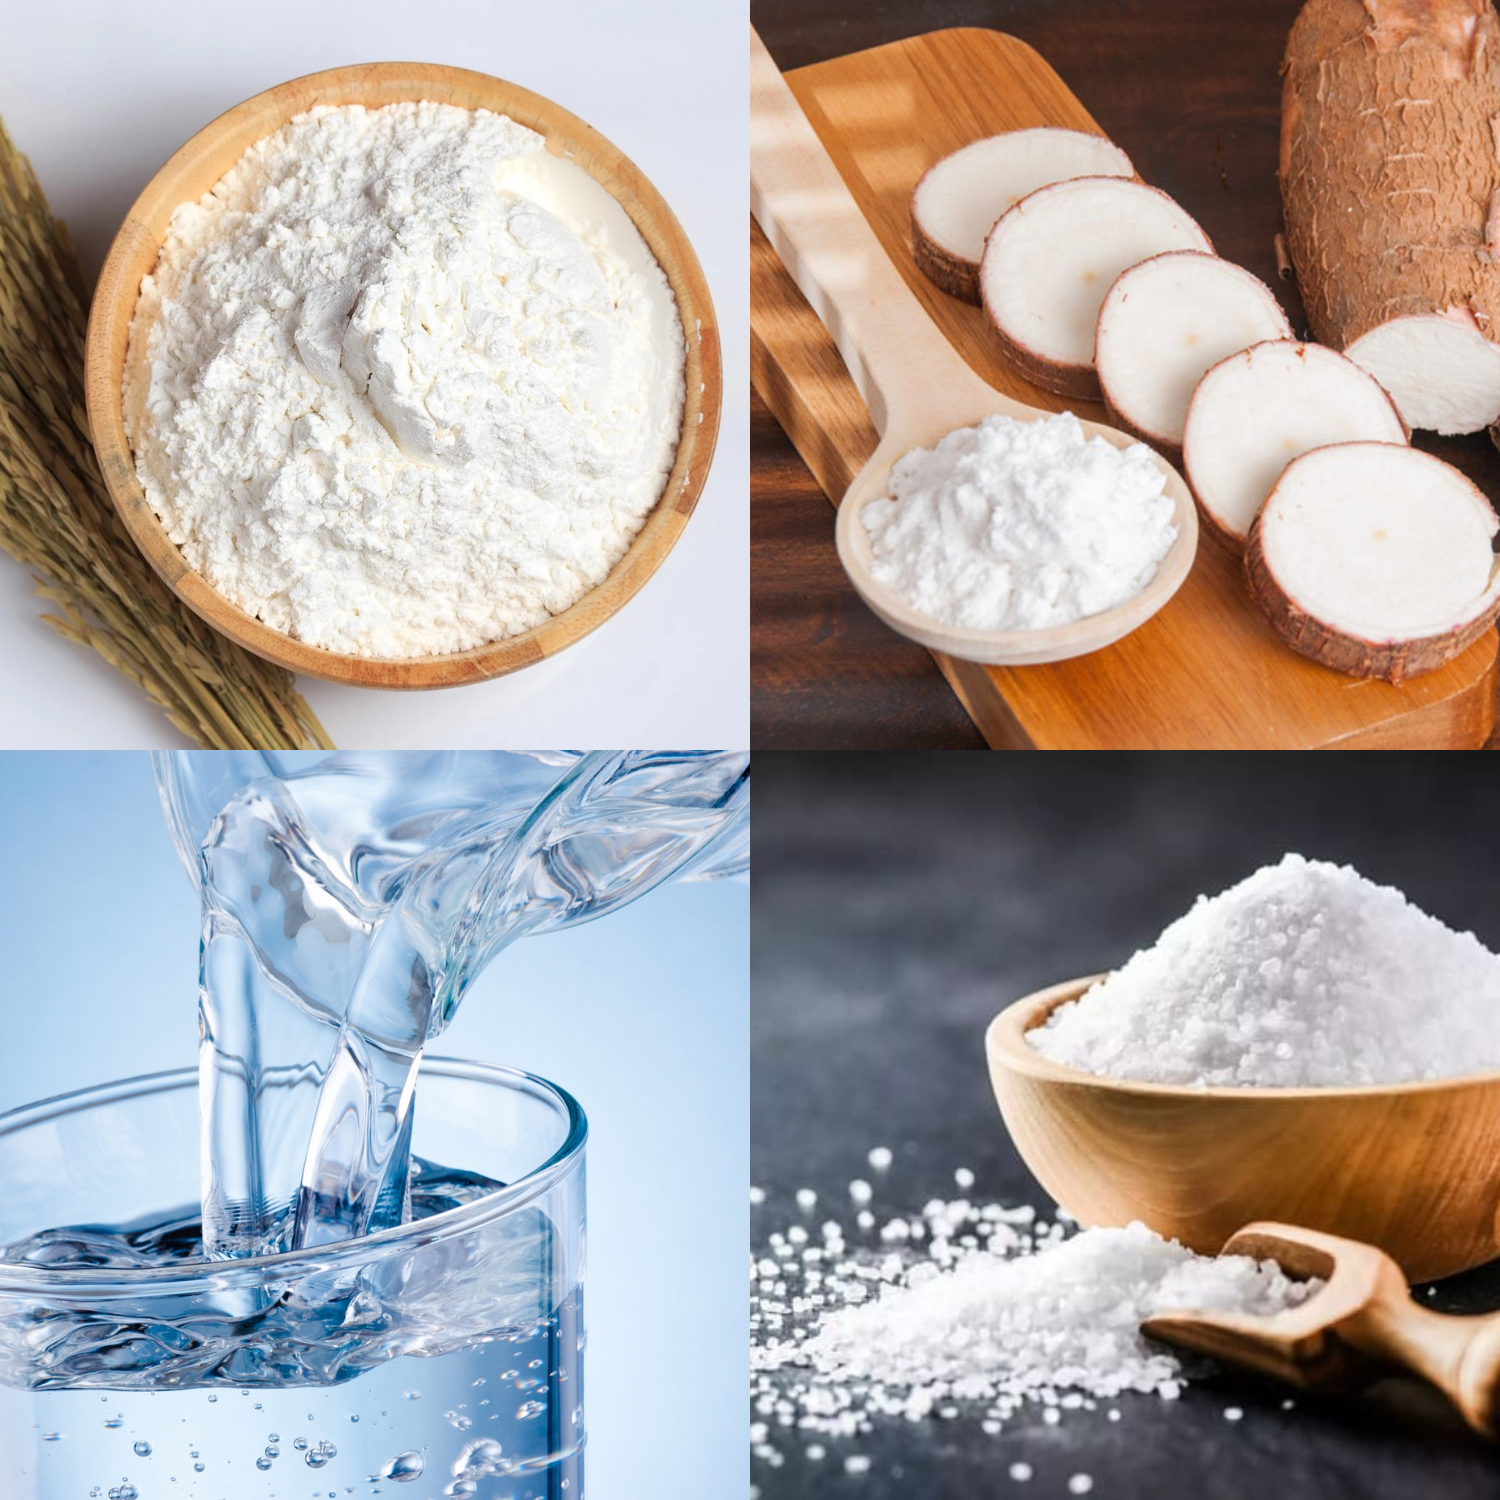 Bánh tráng được làm từ các nguyên liệu thô, muối và nước